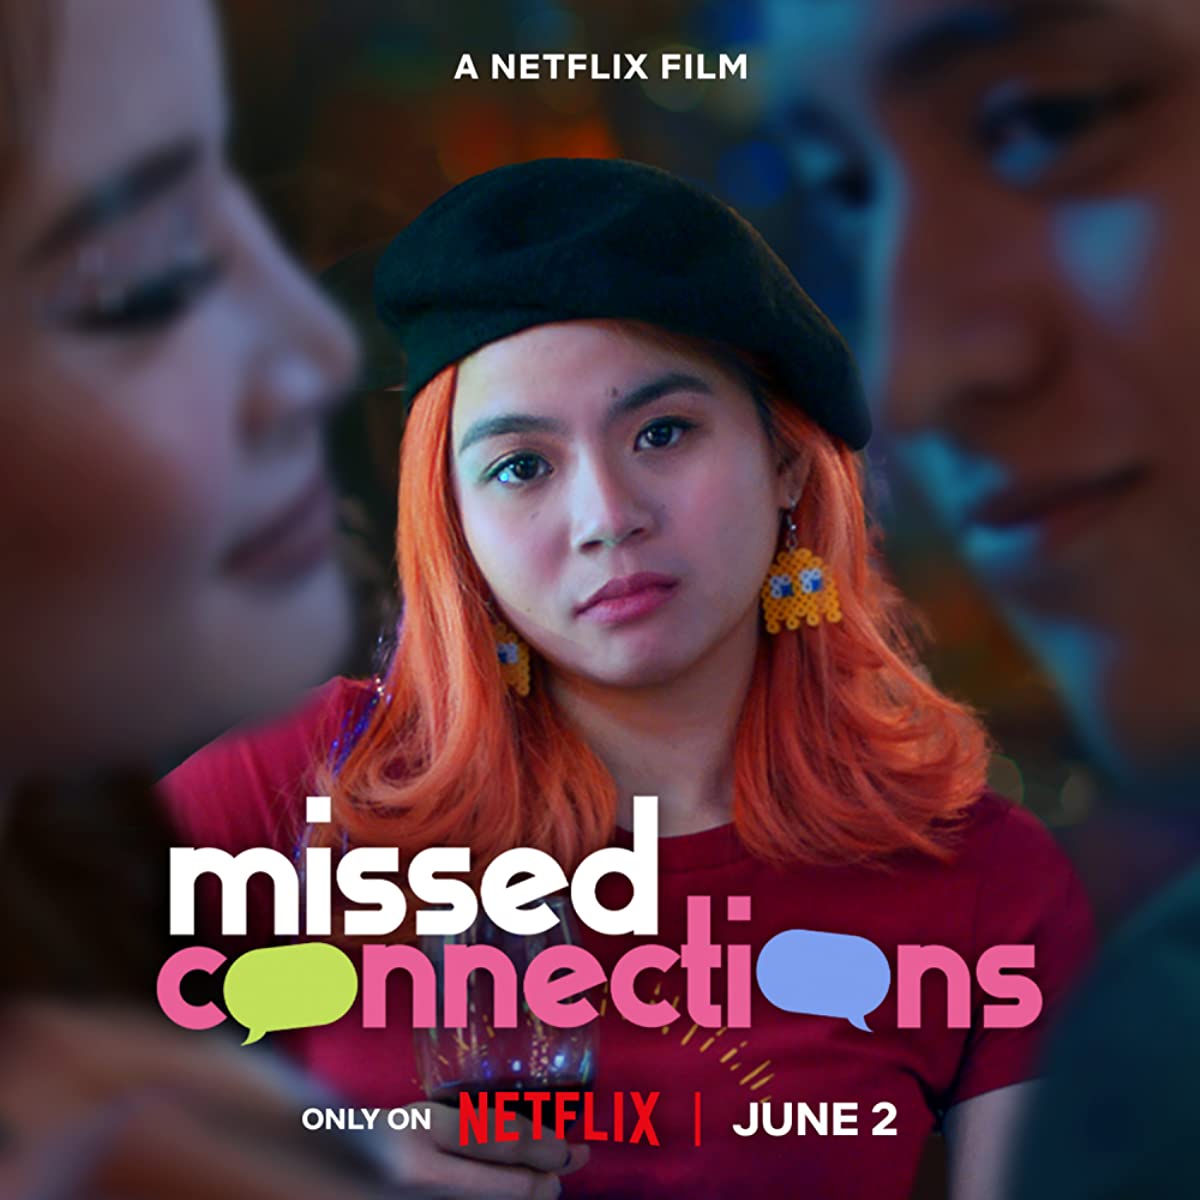 فيلم الفرص المهدرة Missed Connections مترجم